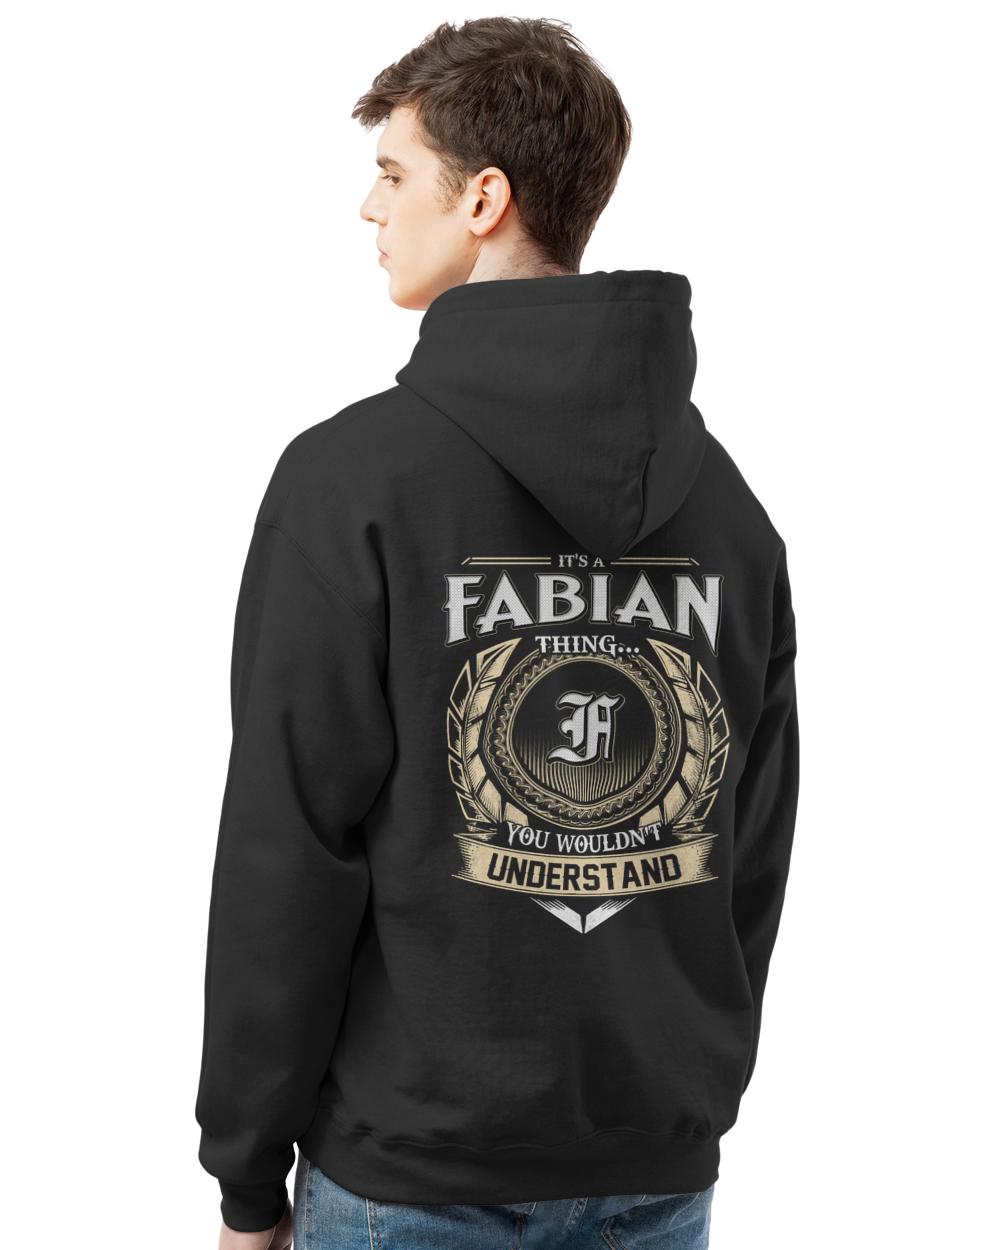 FABIAN-13K-46-01